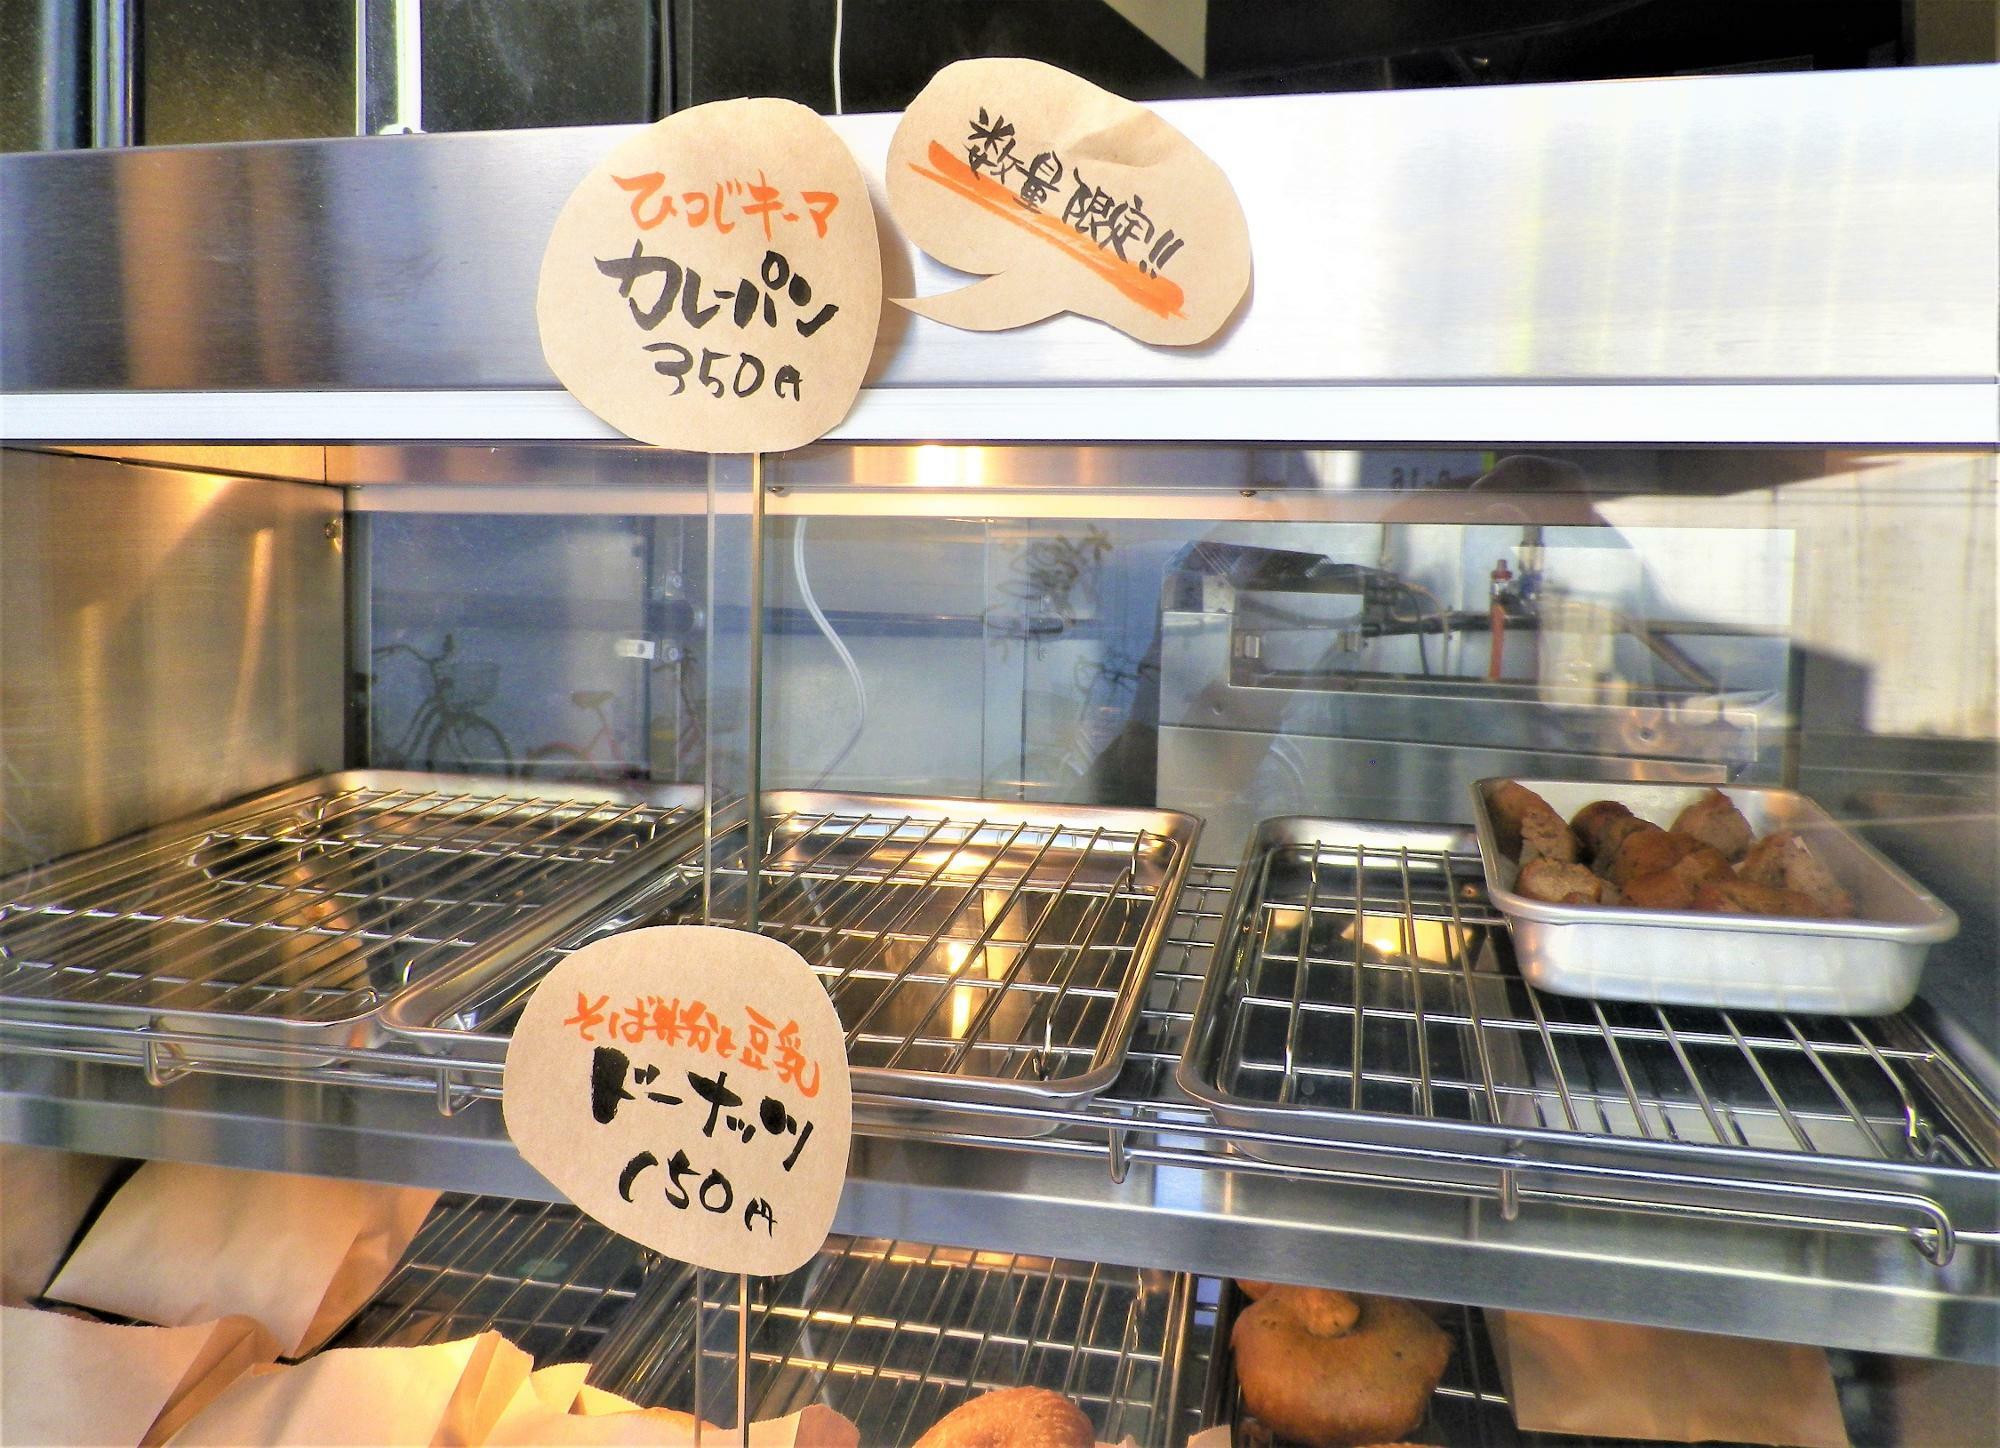 「ひつじキーマカレーパン」が350円。「そば粉と豆乳ドーナッツ」が150円。いずれも税込みです。お手頃価格です。